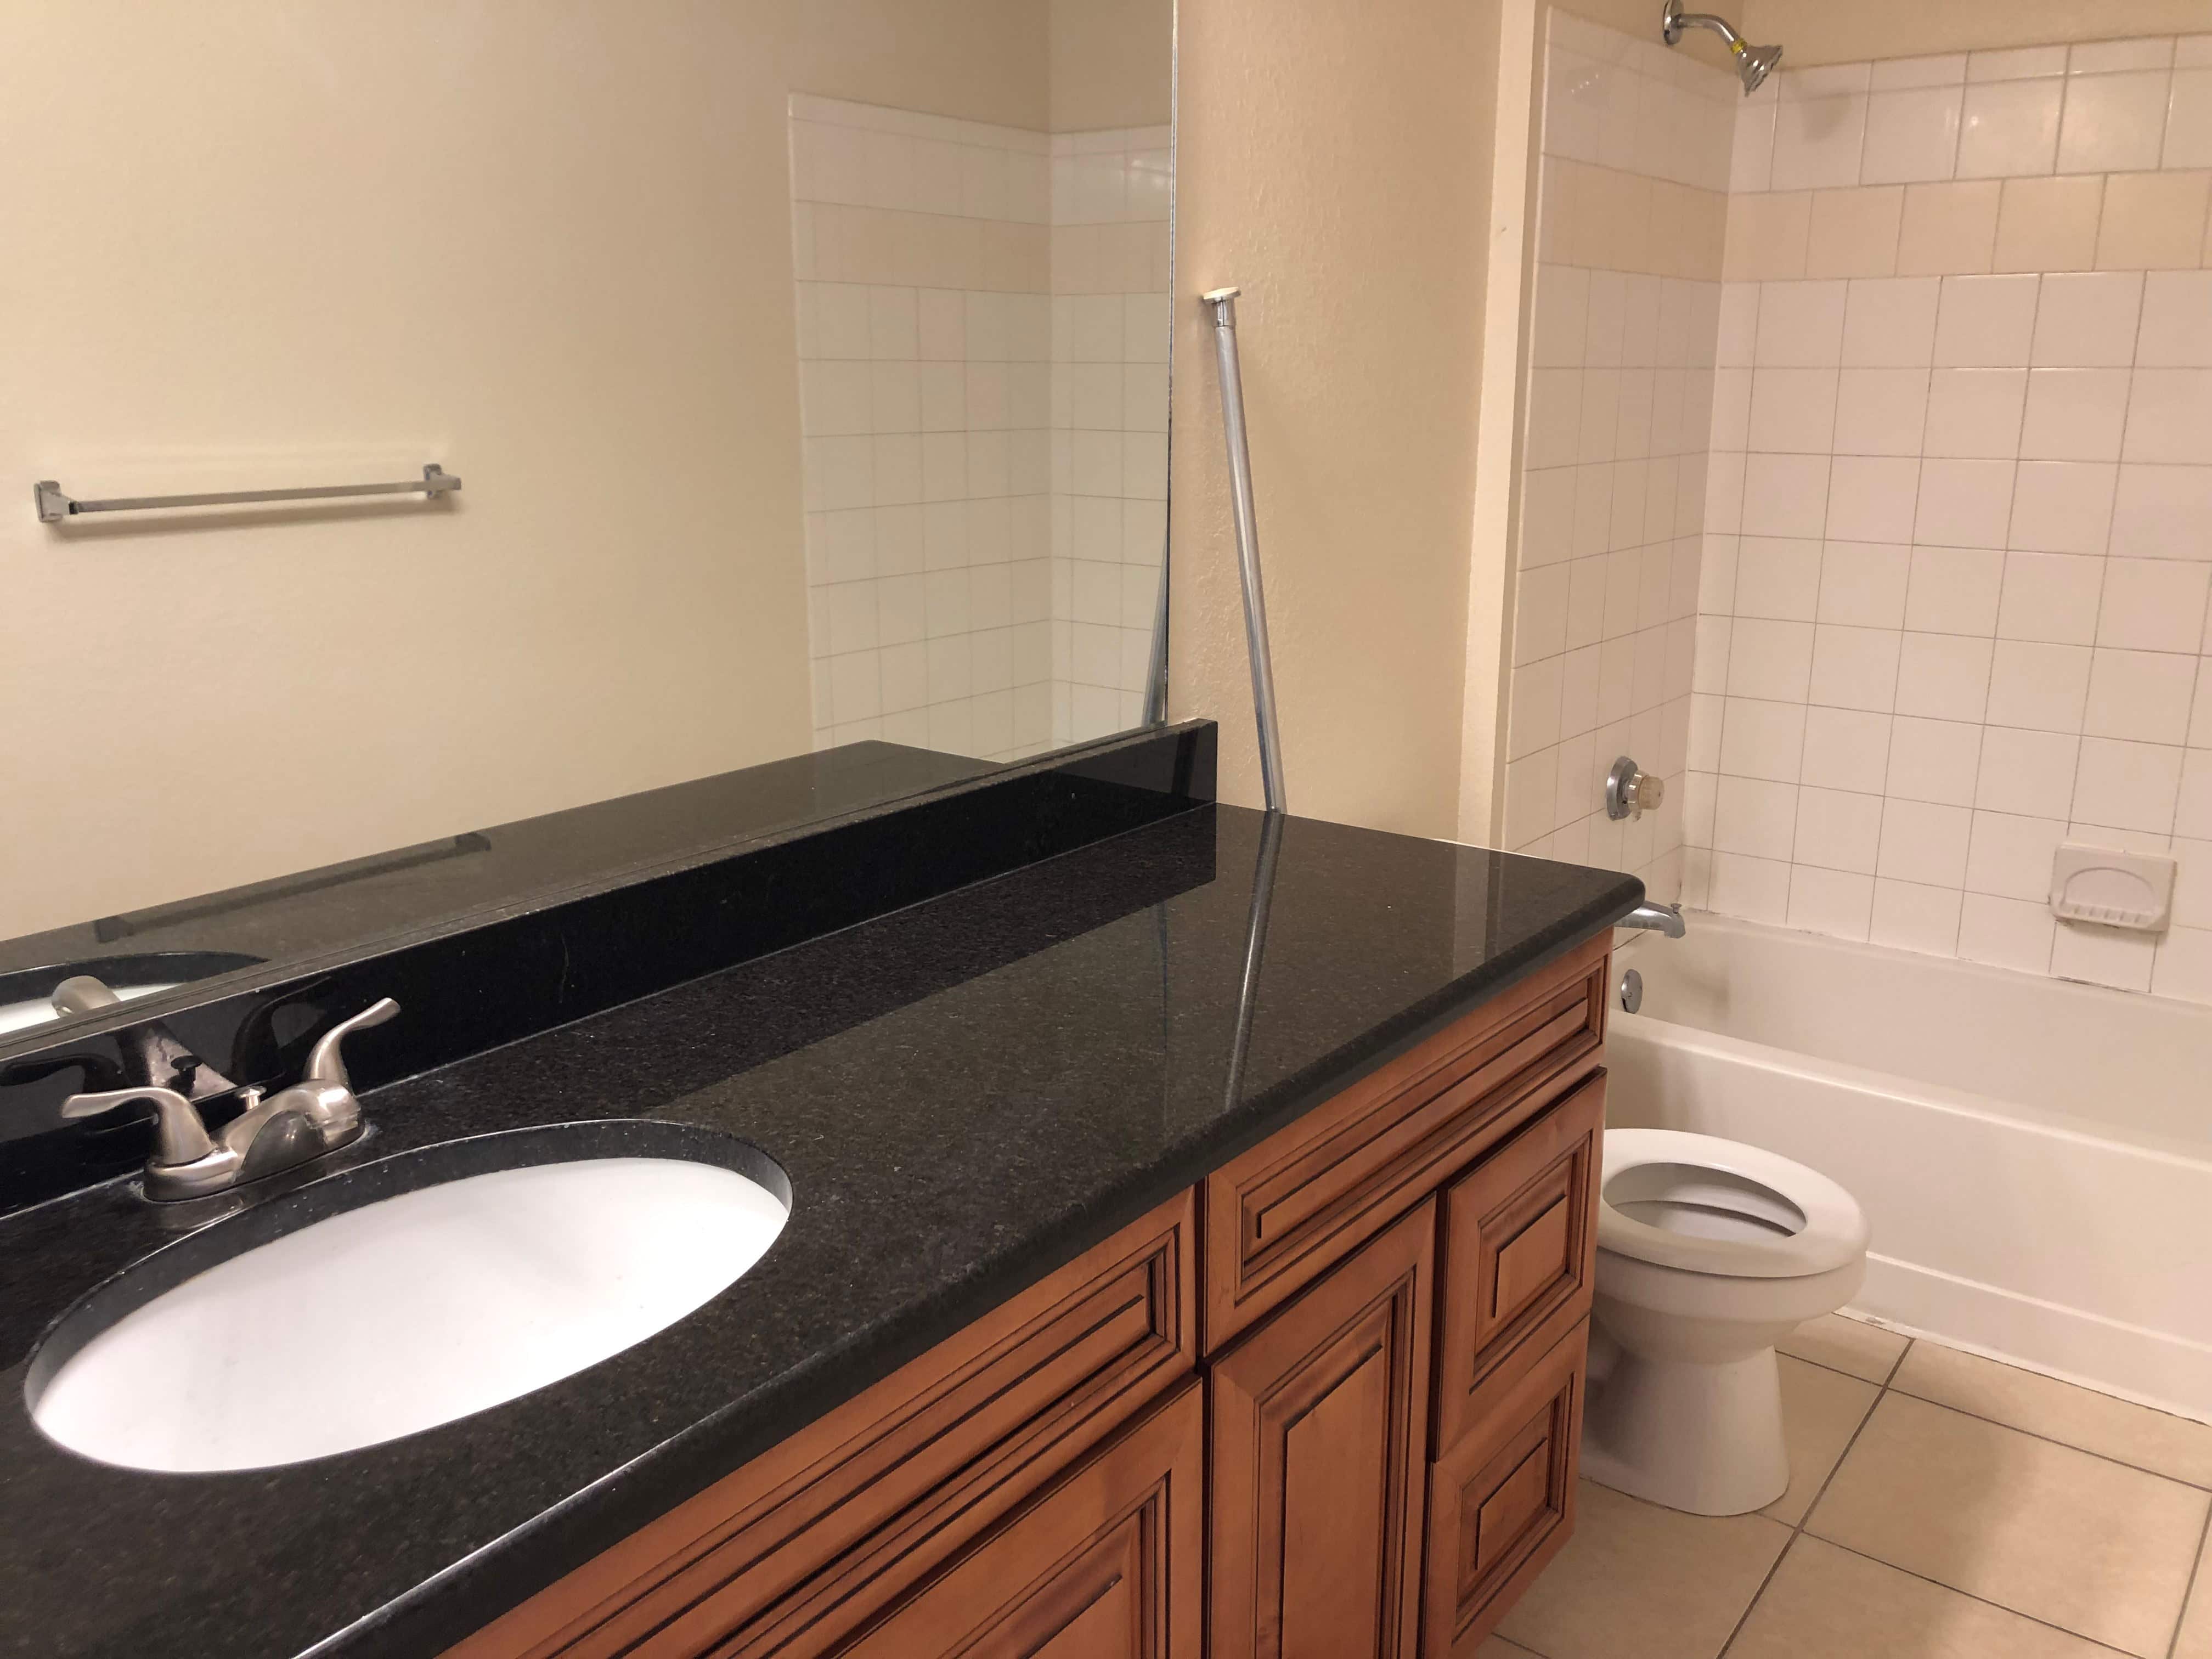 salle de bain d'un appartement en Floride refaite avec du marbre